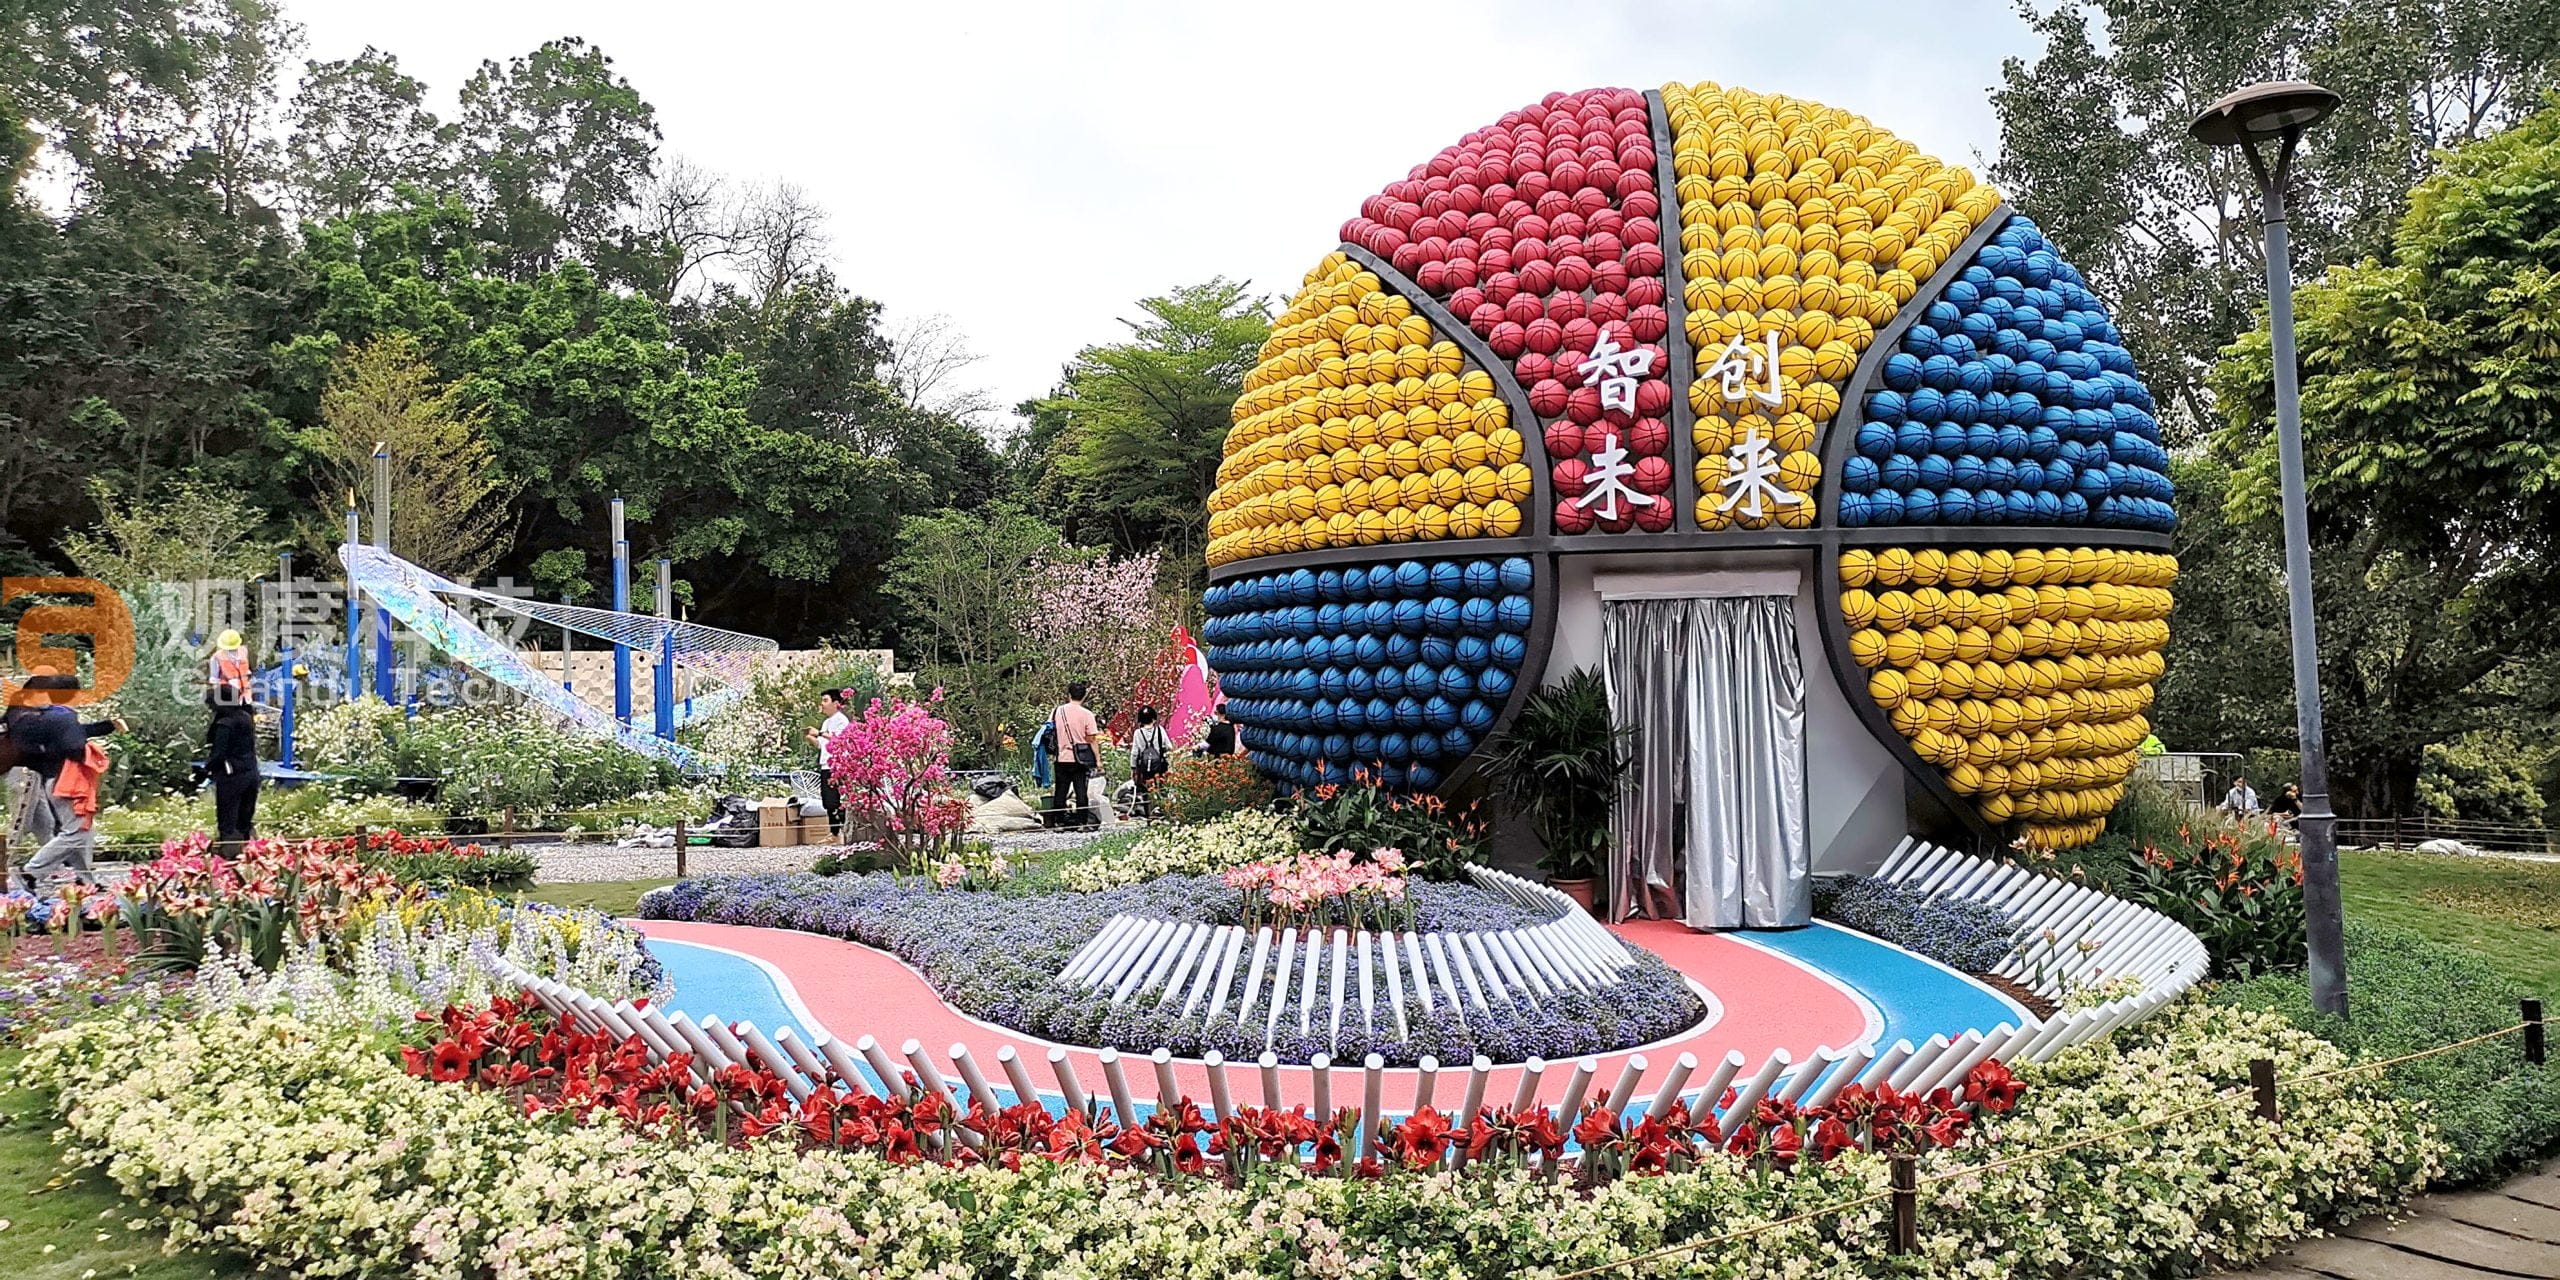 【观度球幕案例】2022 2022年深圳植物园—篮球造型设计的球幕展馆